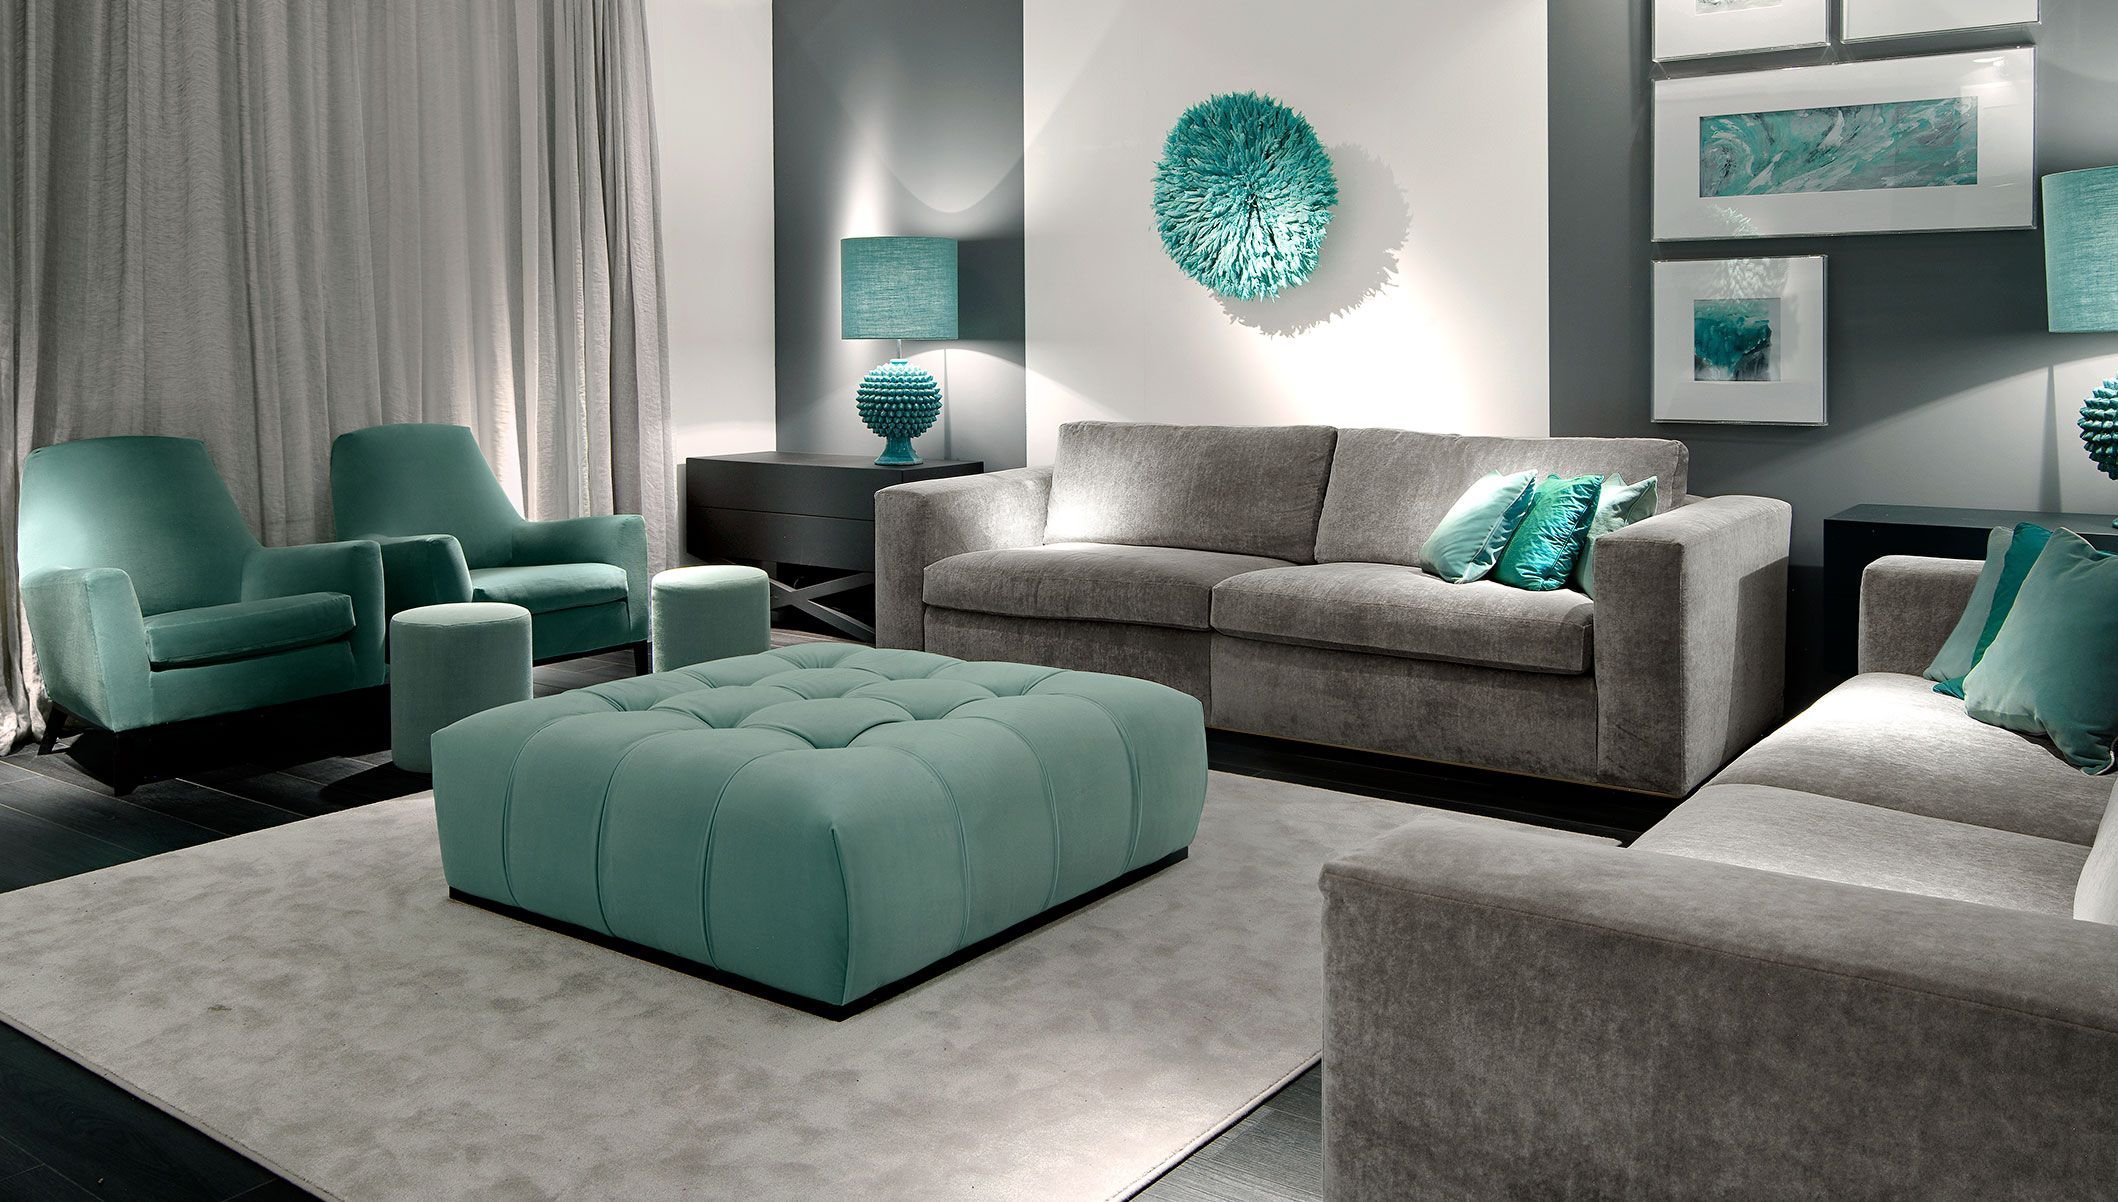 Изумрудно серый цвет. Диван изумрудного цвета в интерьере. Бирюзовый диван в интерьере. Серый диван с бирюзовыми подушками. Гостиная с изумрудным диваном.